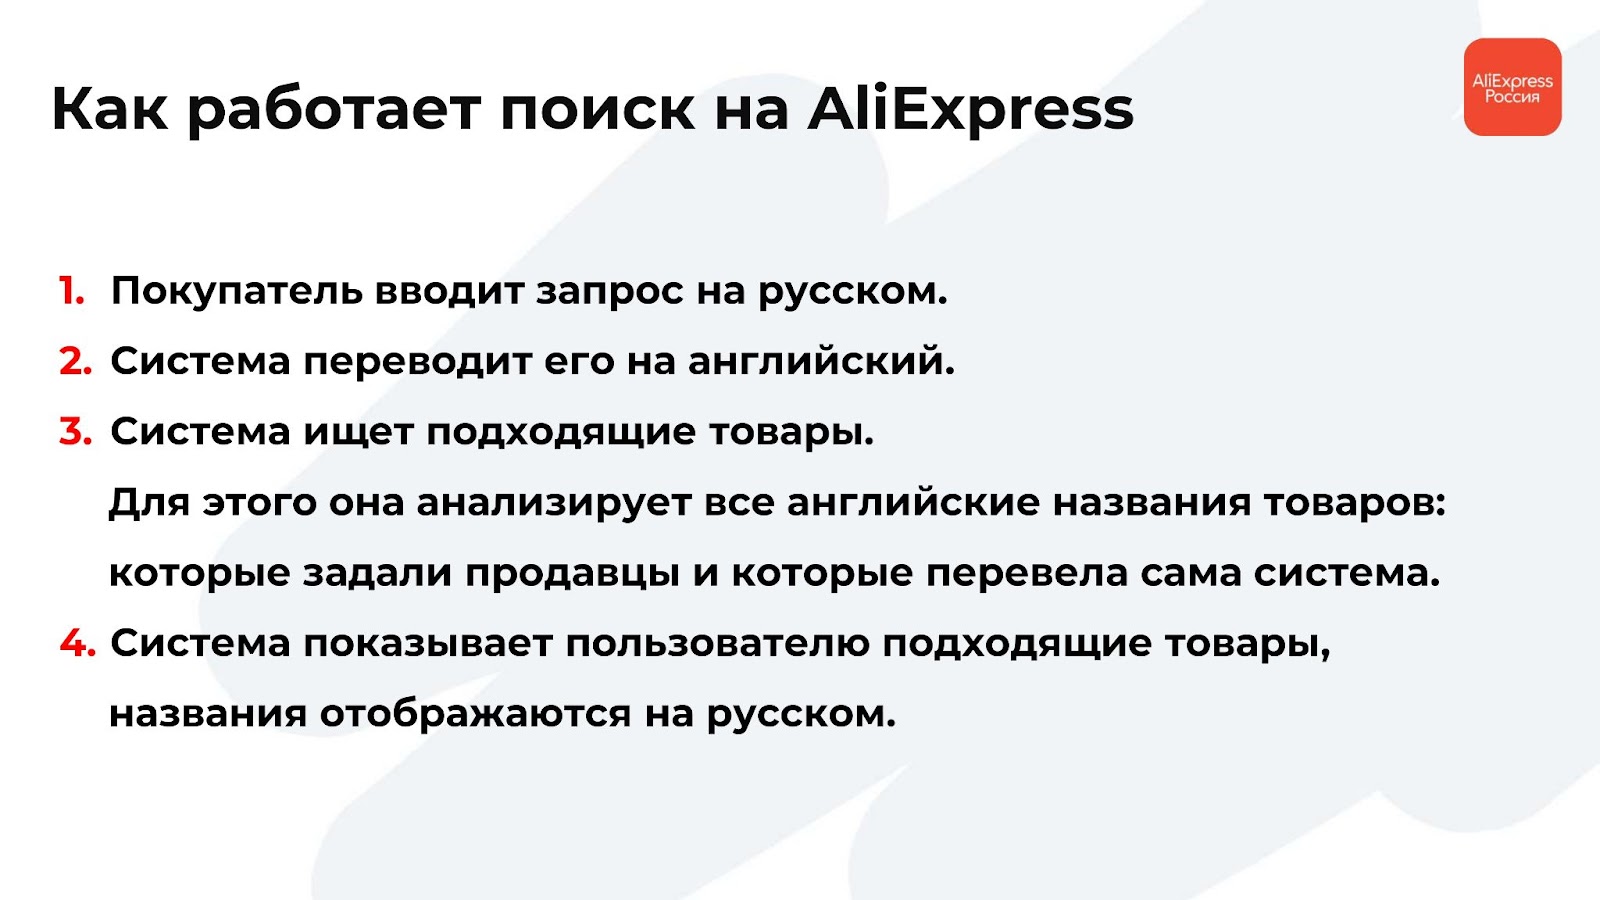 Как работает поиск на AliExpress